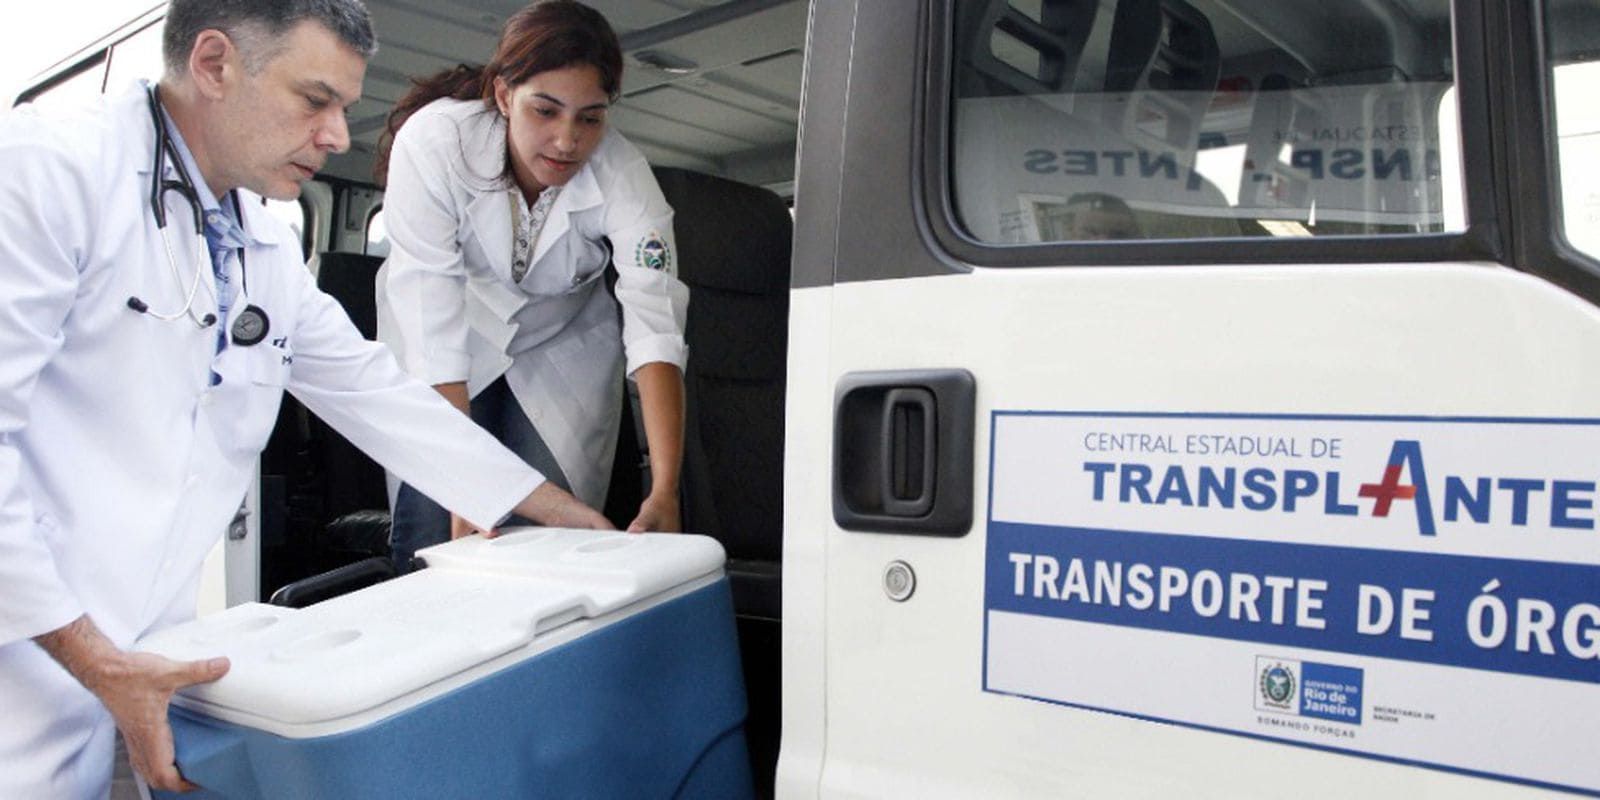 Profissionais da saúde carregam caixa em frente a uma van com o escrito "transporte de órgãos"; veja as profissões que atuam na doação e transplante de órgãos